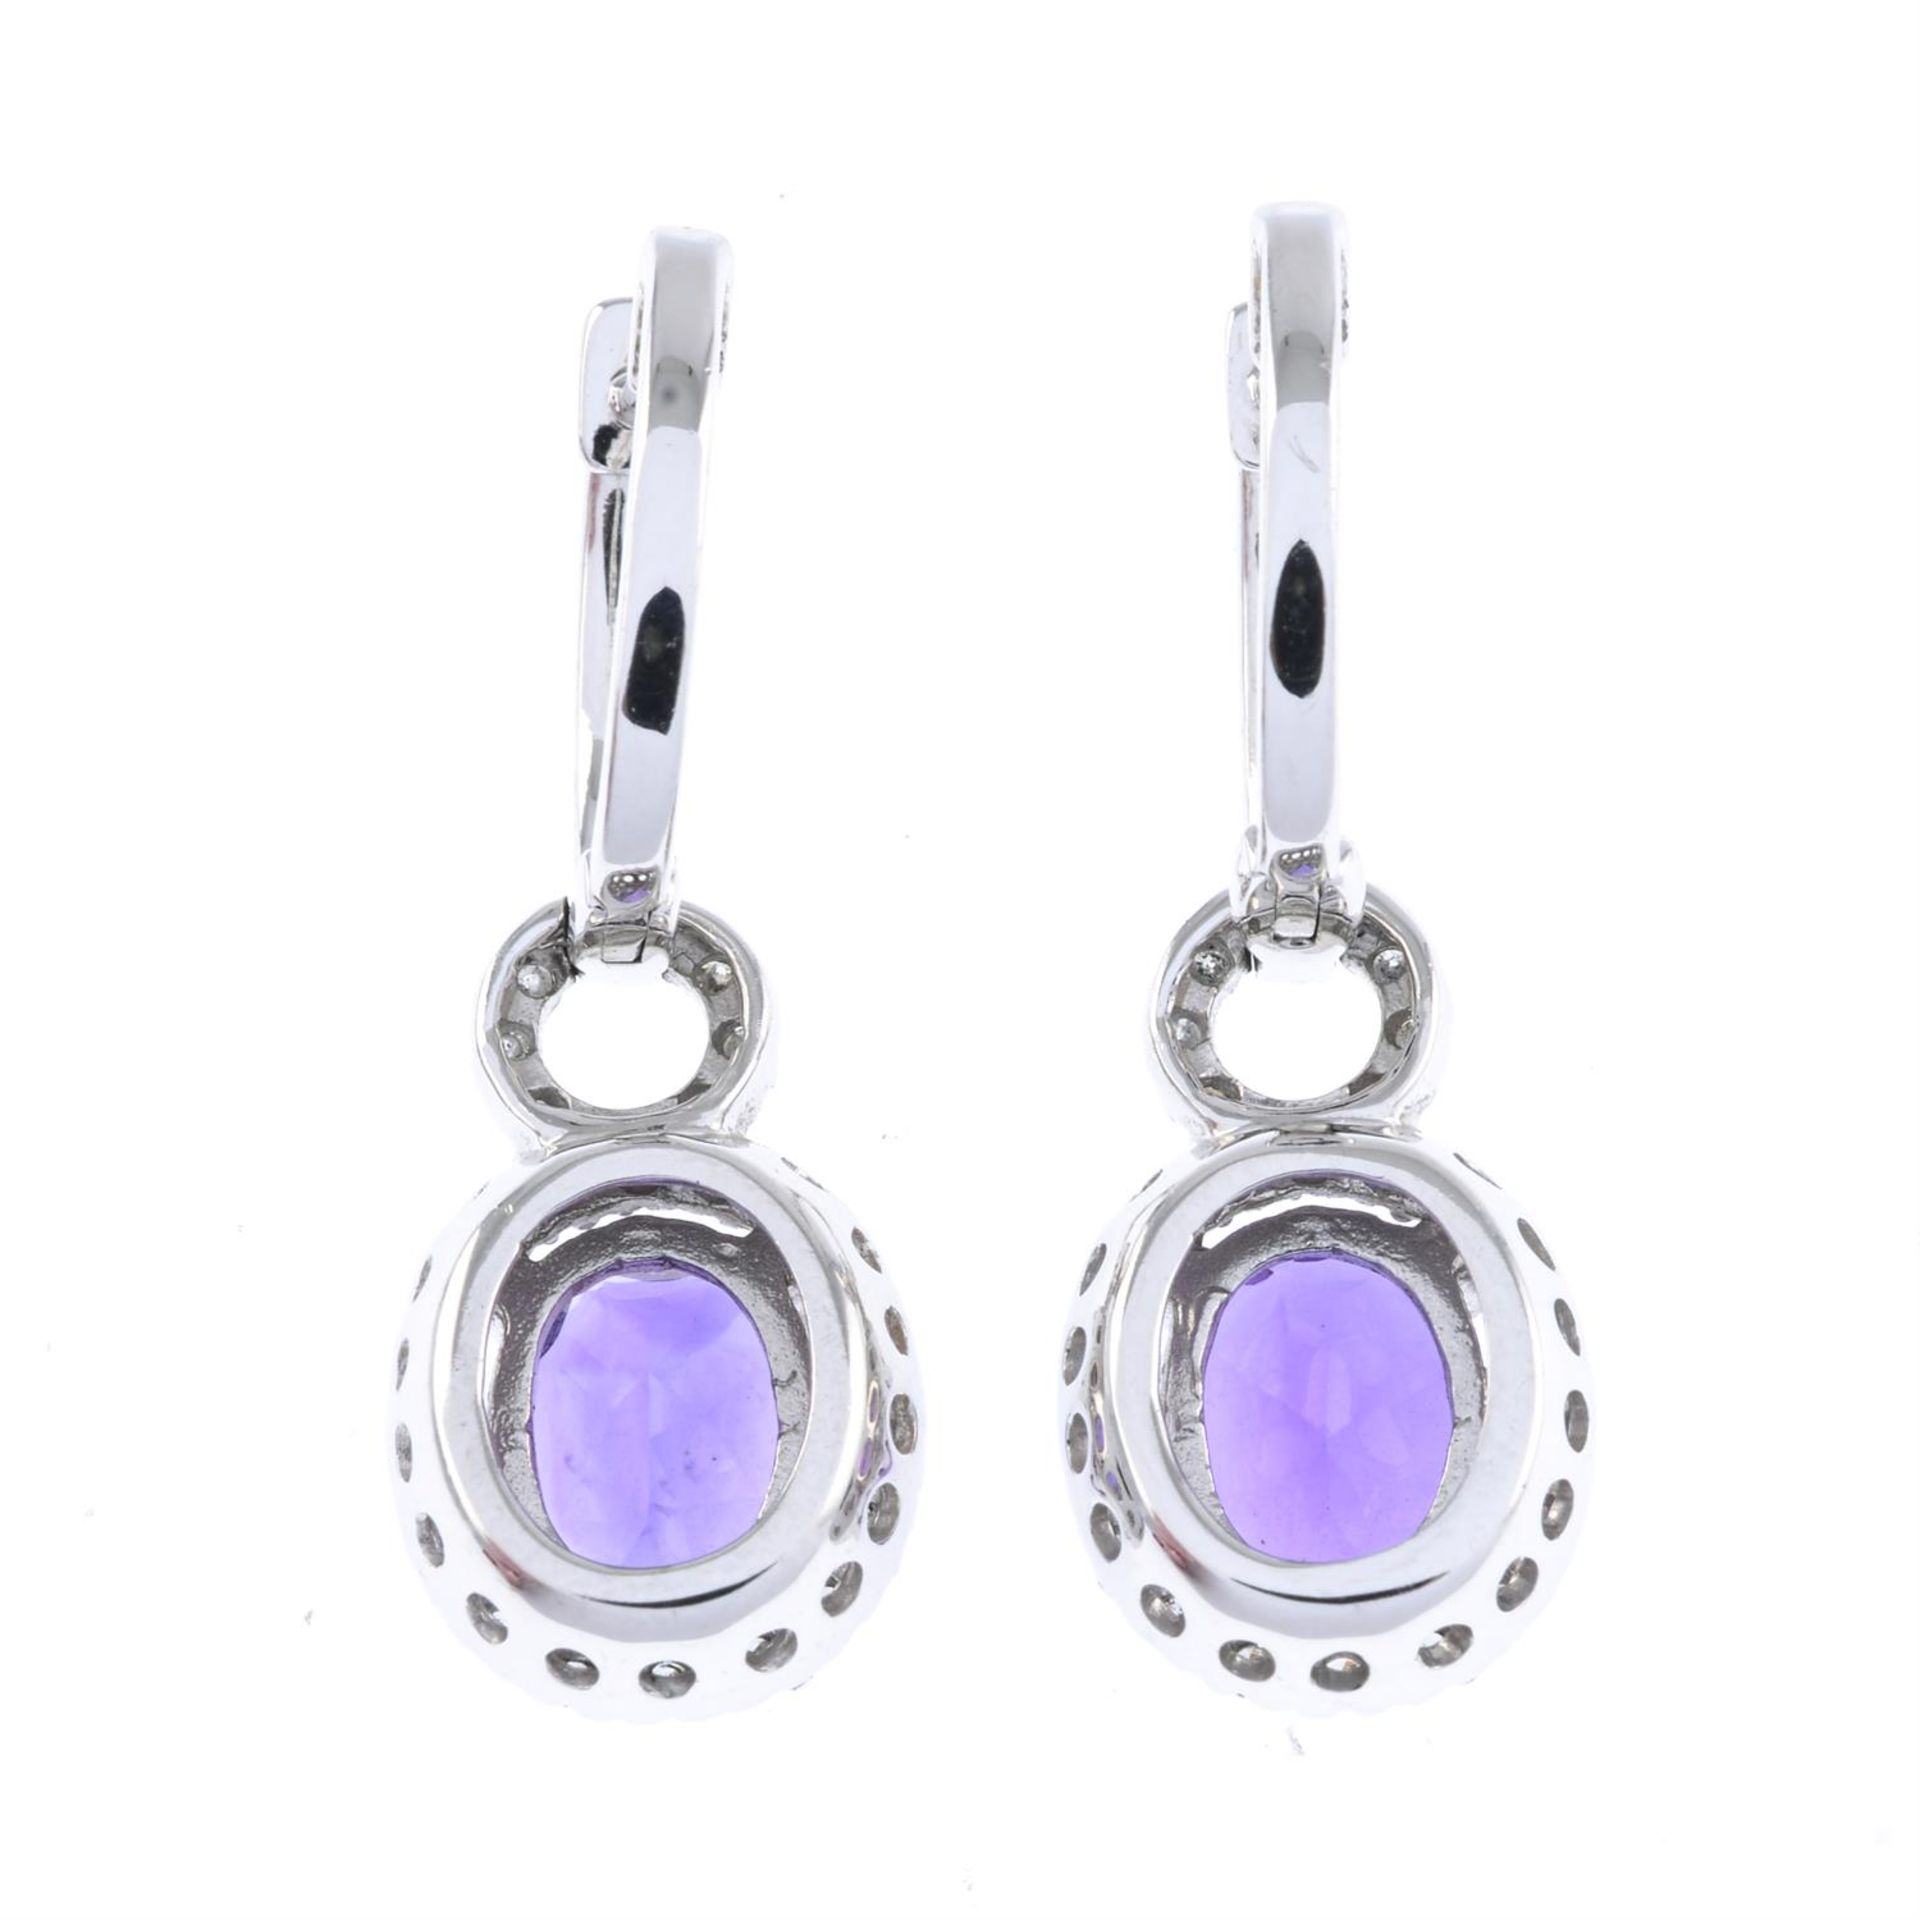 Amethyst & diamond earrings, AF - Image 2 of 2